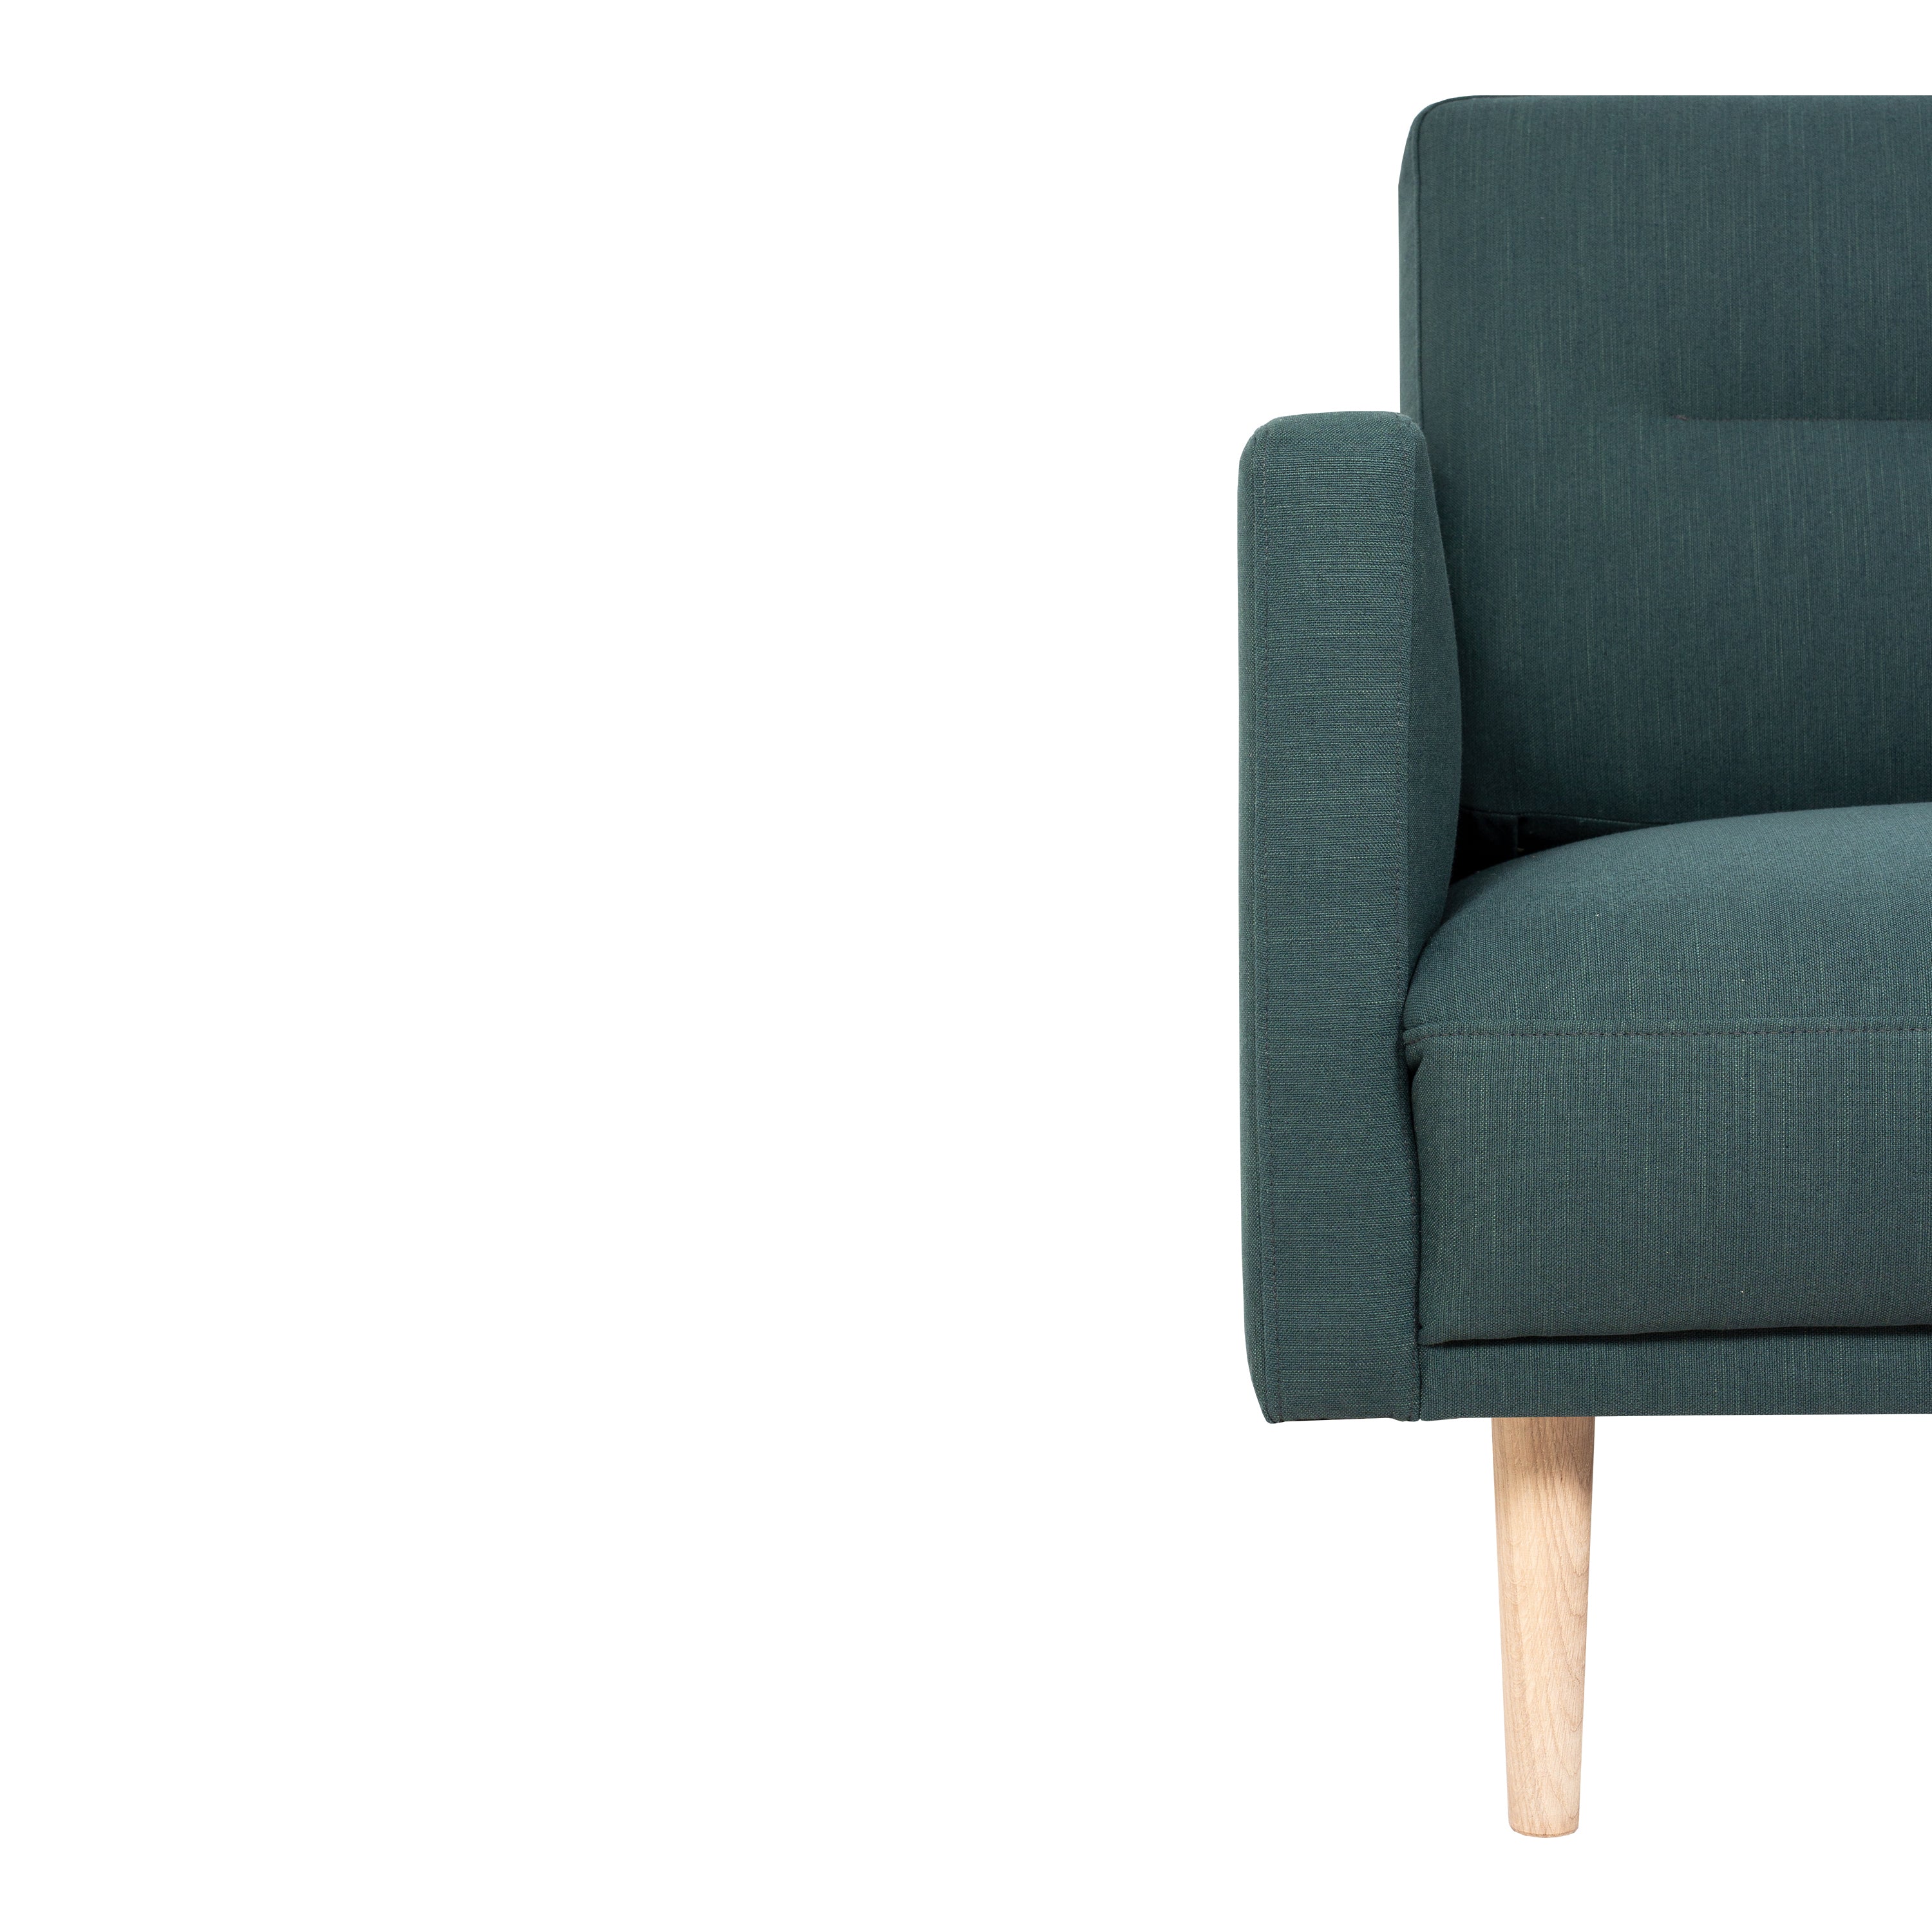 Larvik Chaiselongue Sofa (RH) - Dark Green, Oak Legs